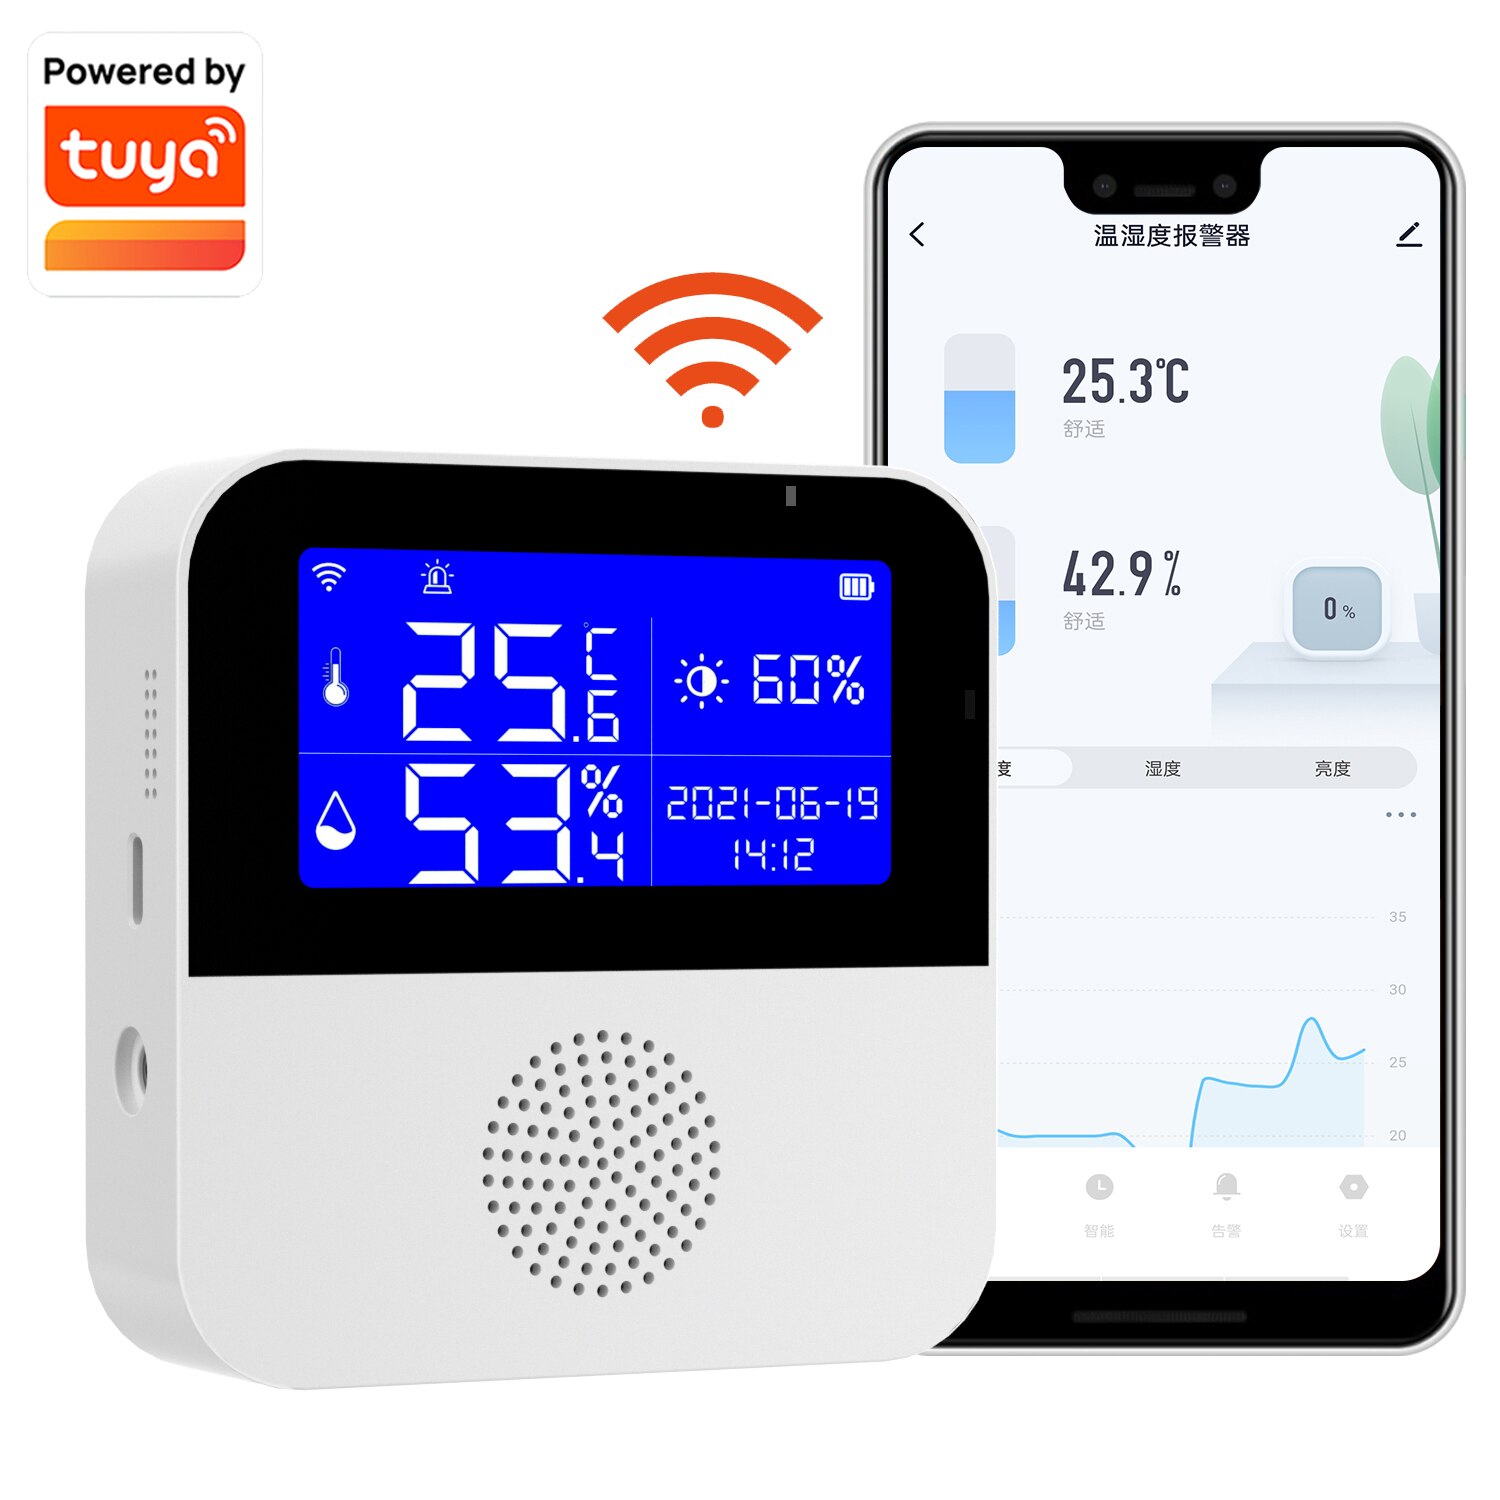 Thermomètre WiFi Tuya Smart Température Capteur Hygromètre